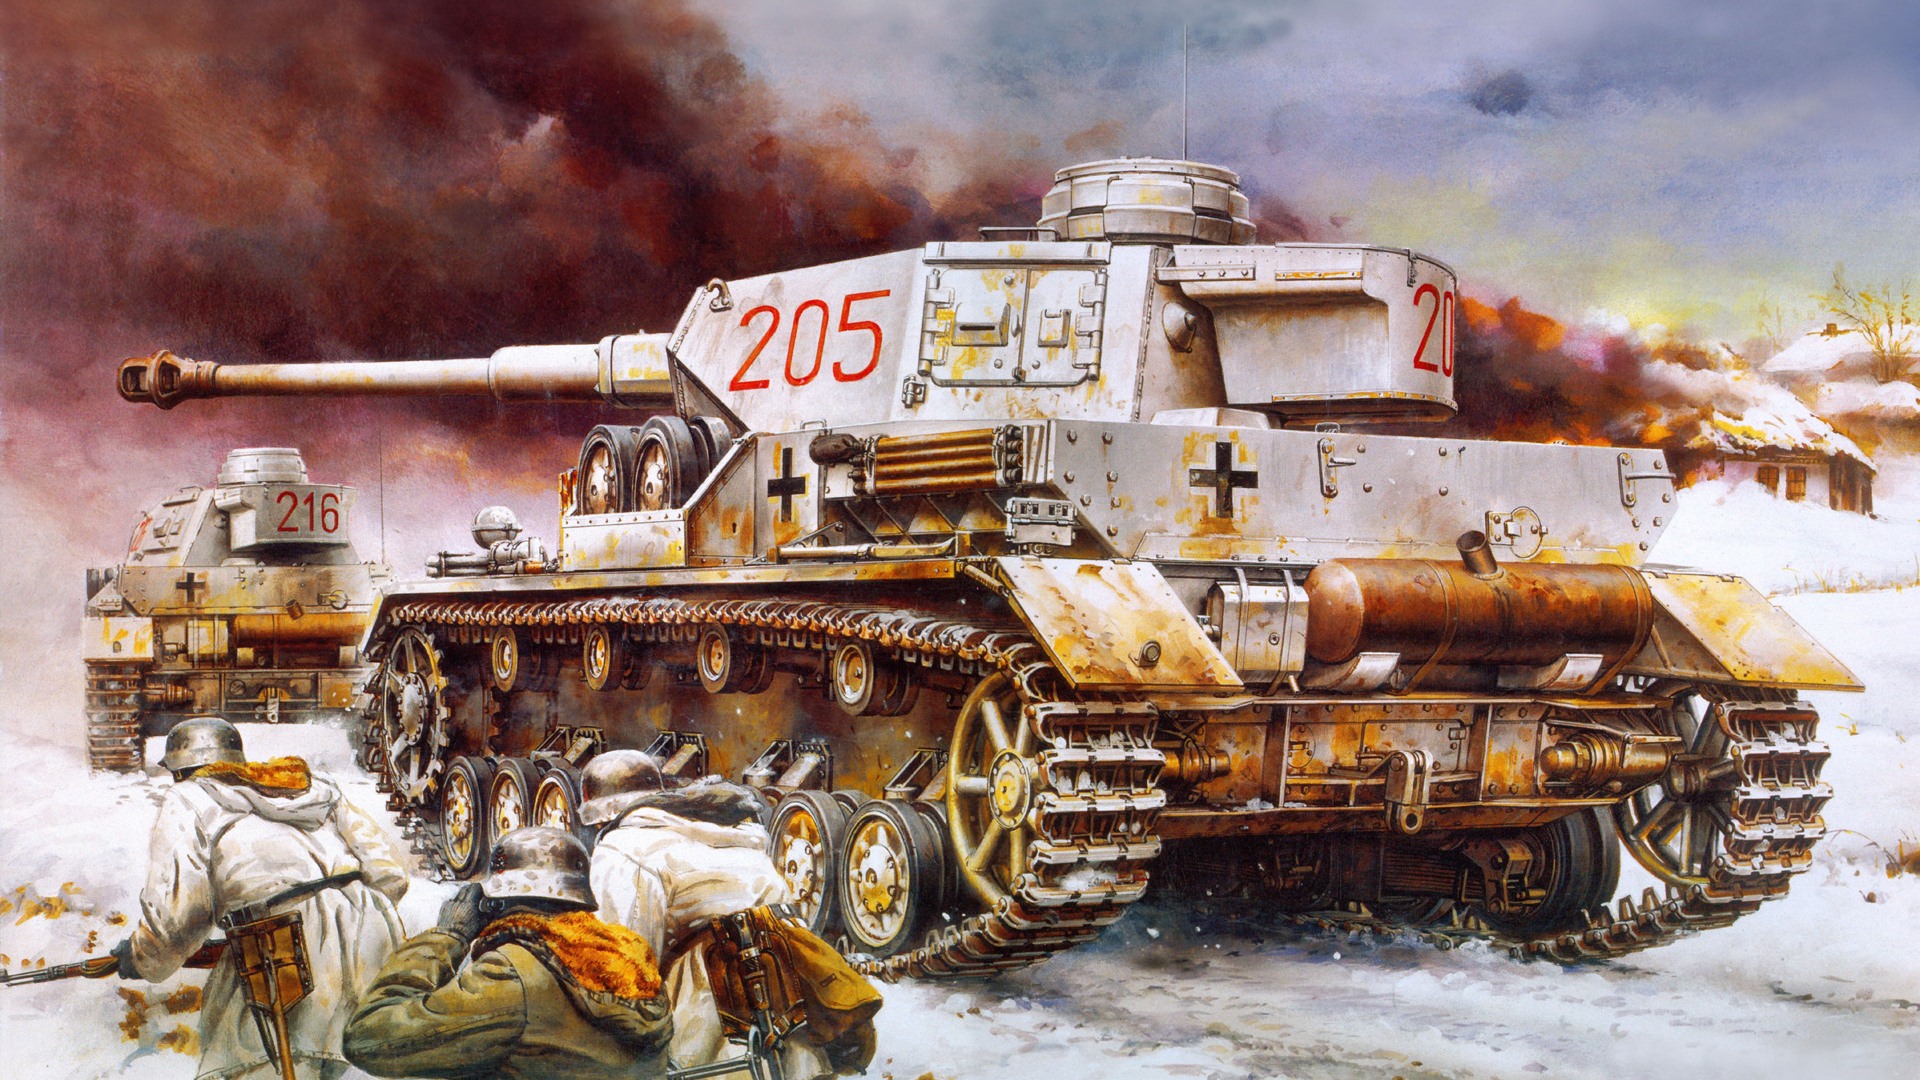 軍の戦車 装甲hdの絵画壁紙 15 19x1080 壁紙ダウンロード 軍の戦車 装甲hdの絵画壁紙 ミリタリー 壁紙 V3の壁紙